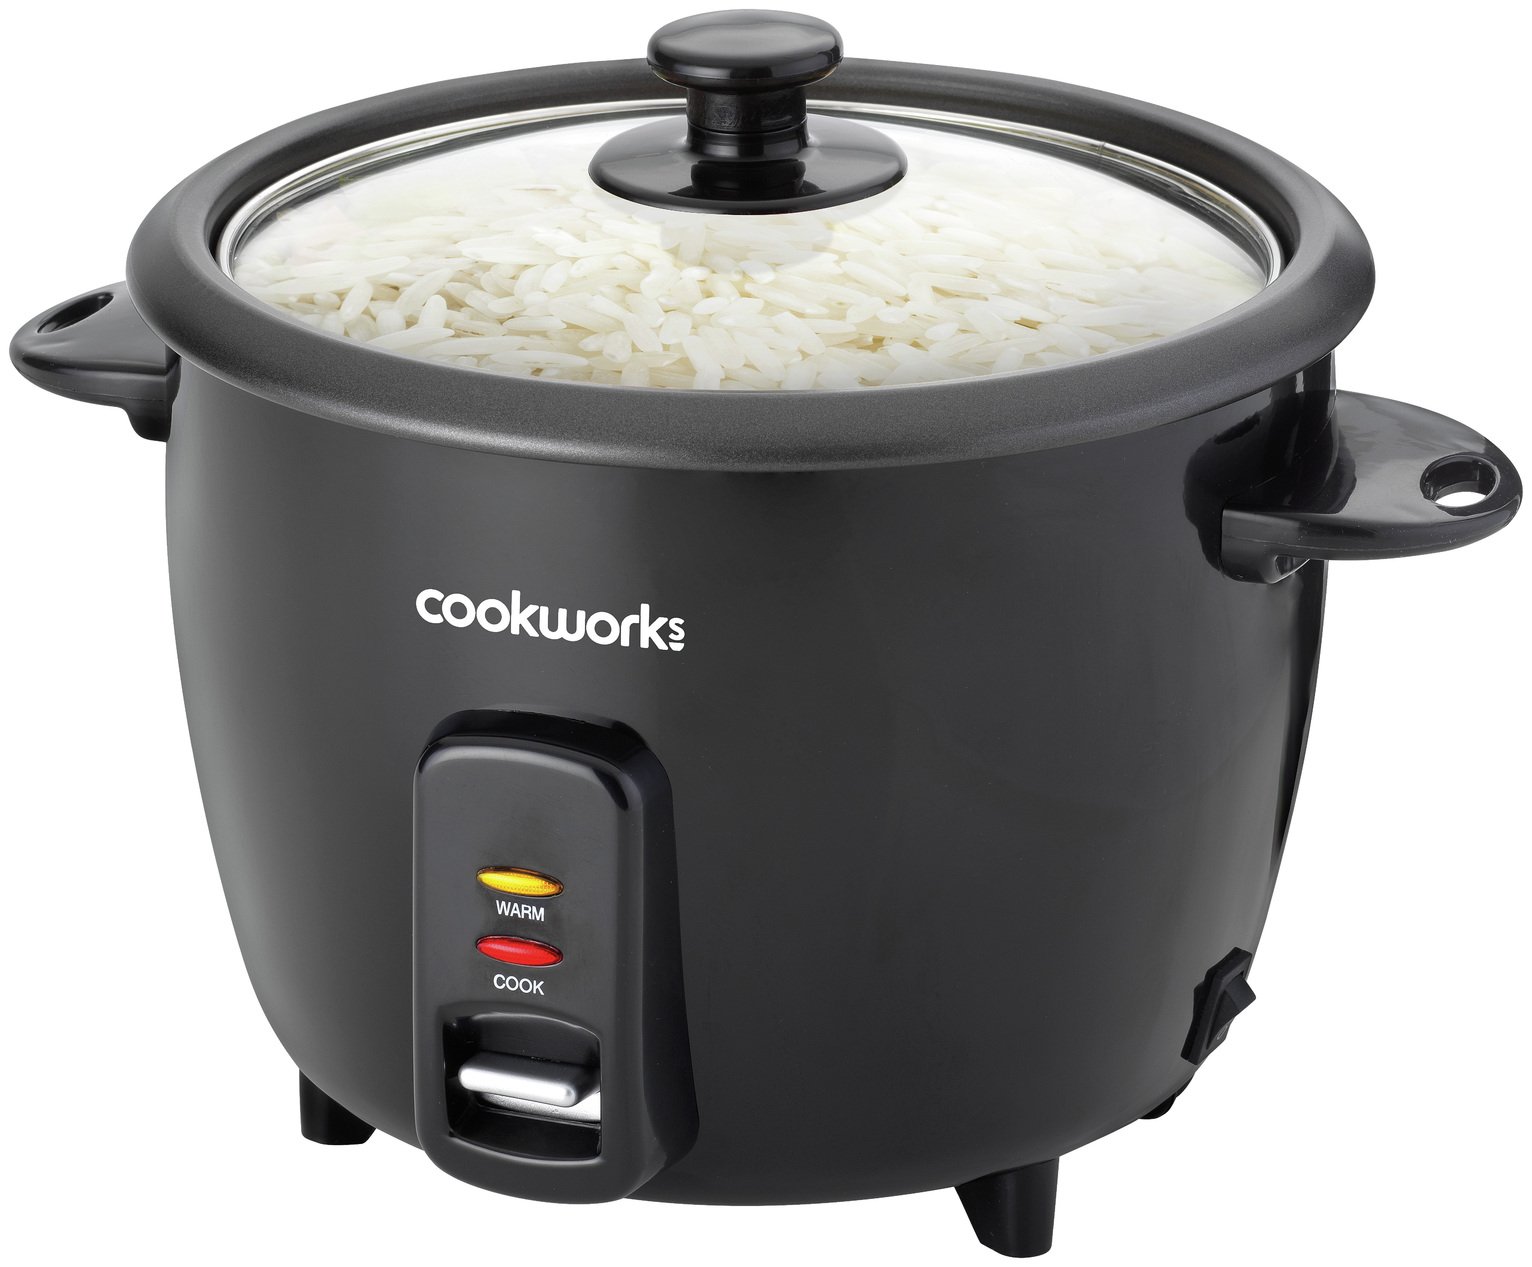 rice cooker deals